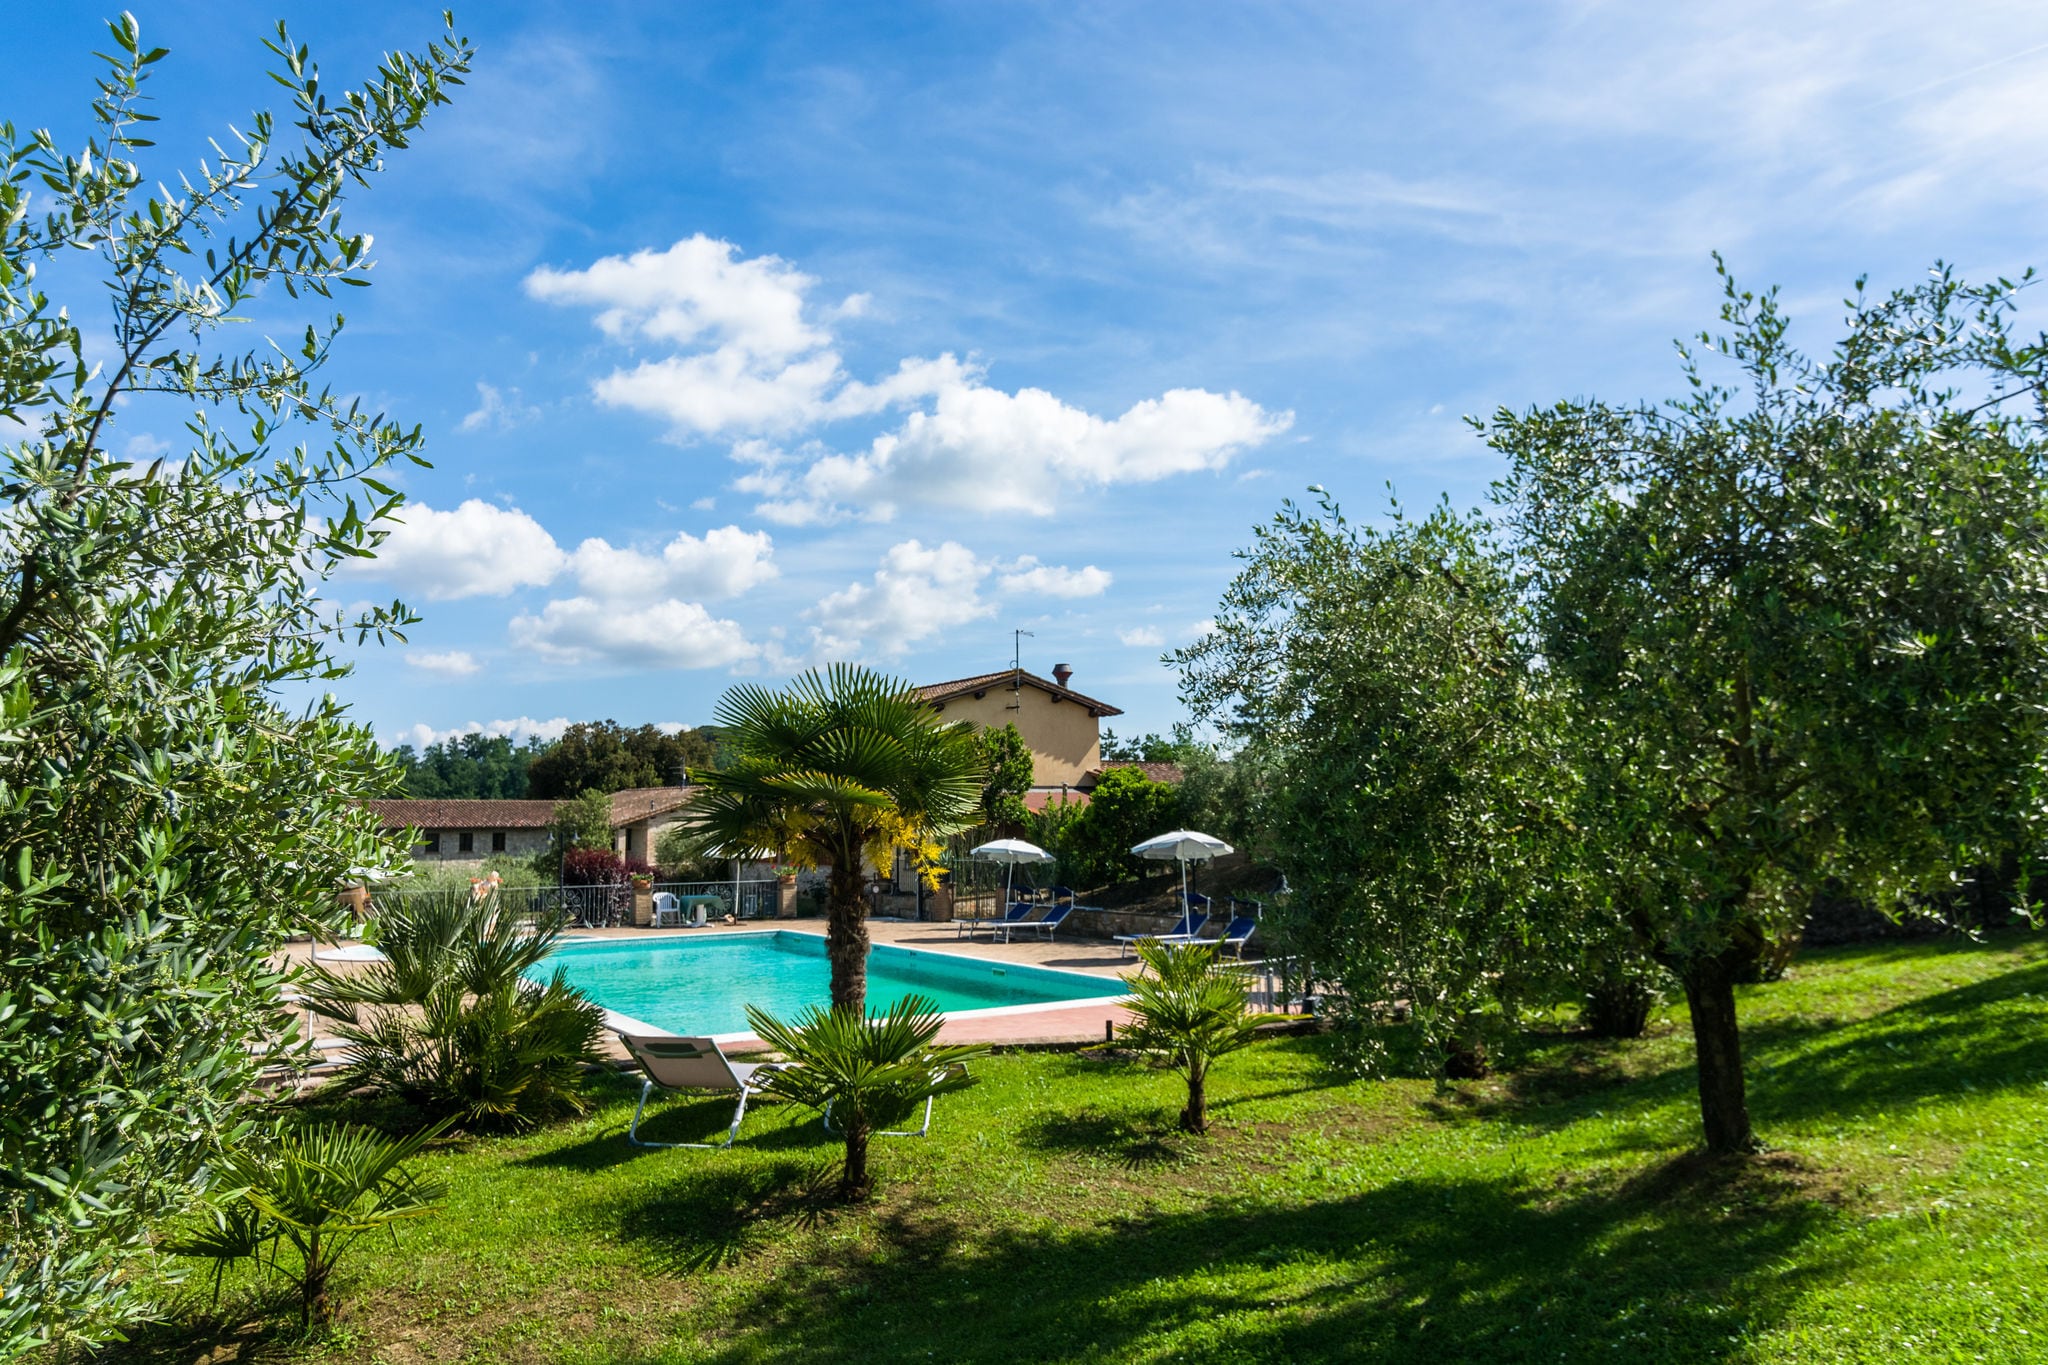 Typische agiturismo in Perugia met een zwembad en bubbelbad